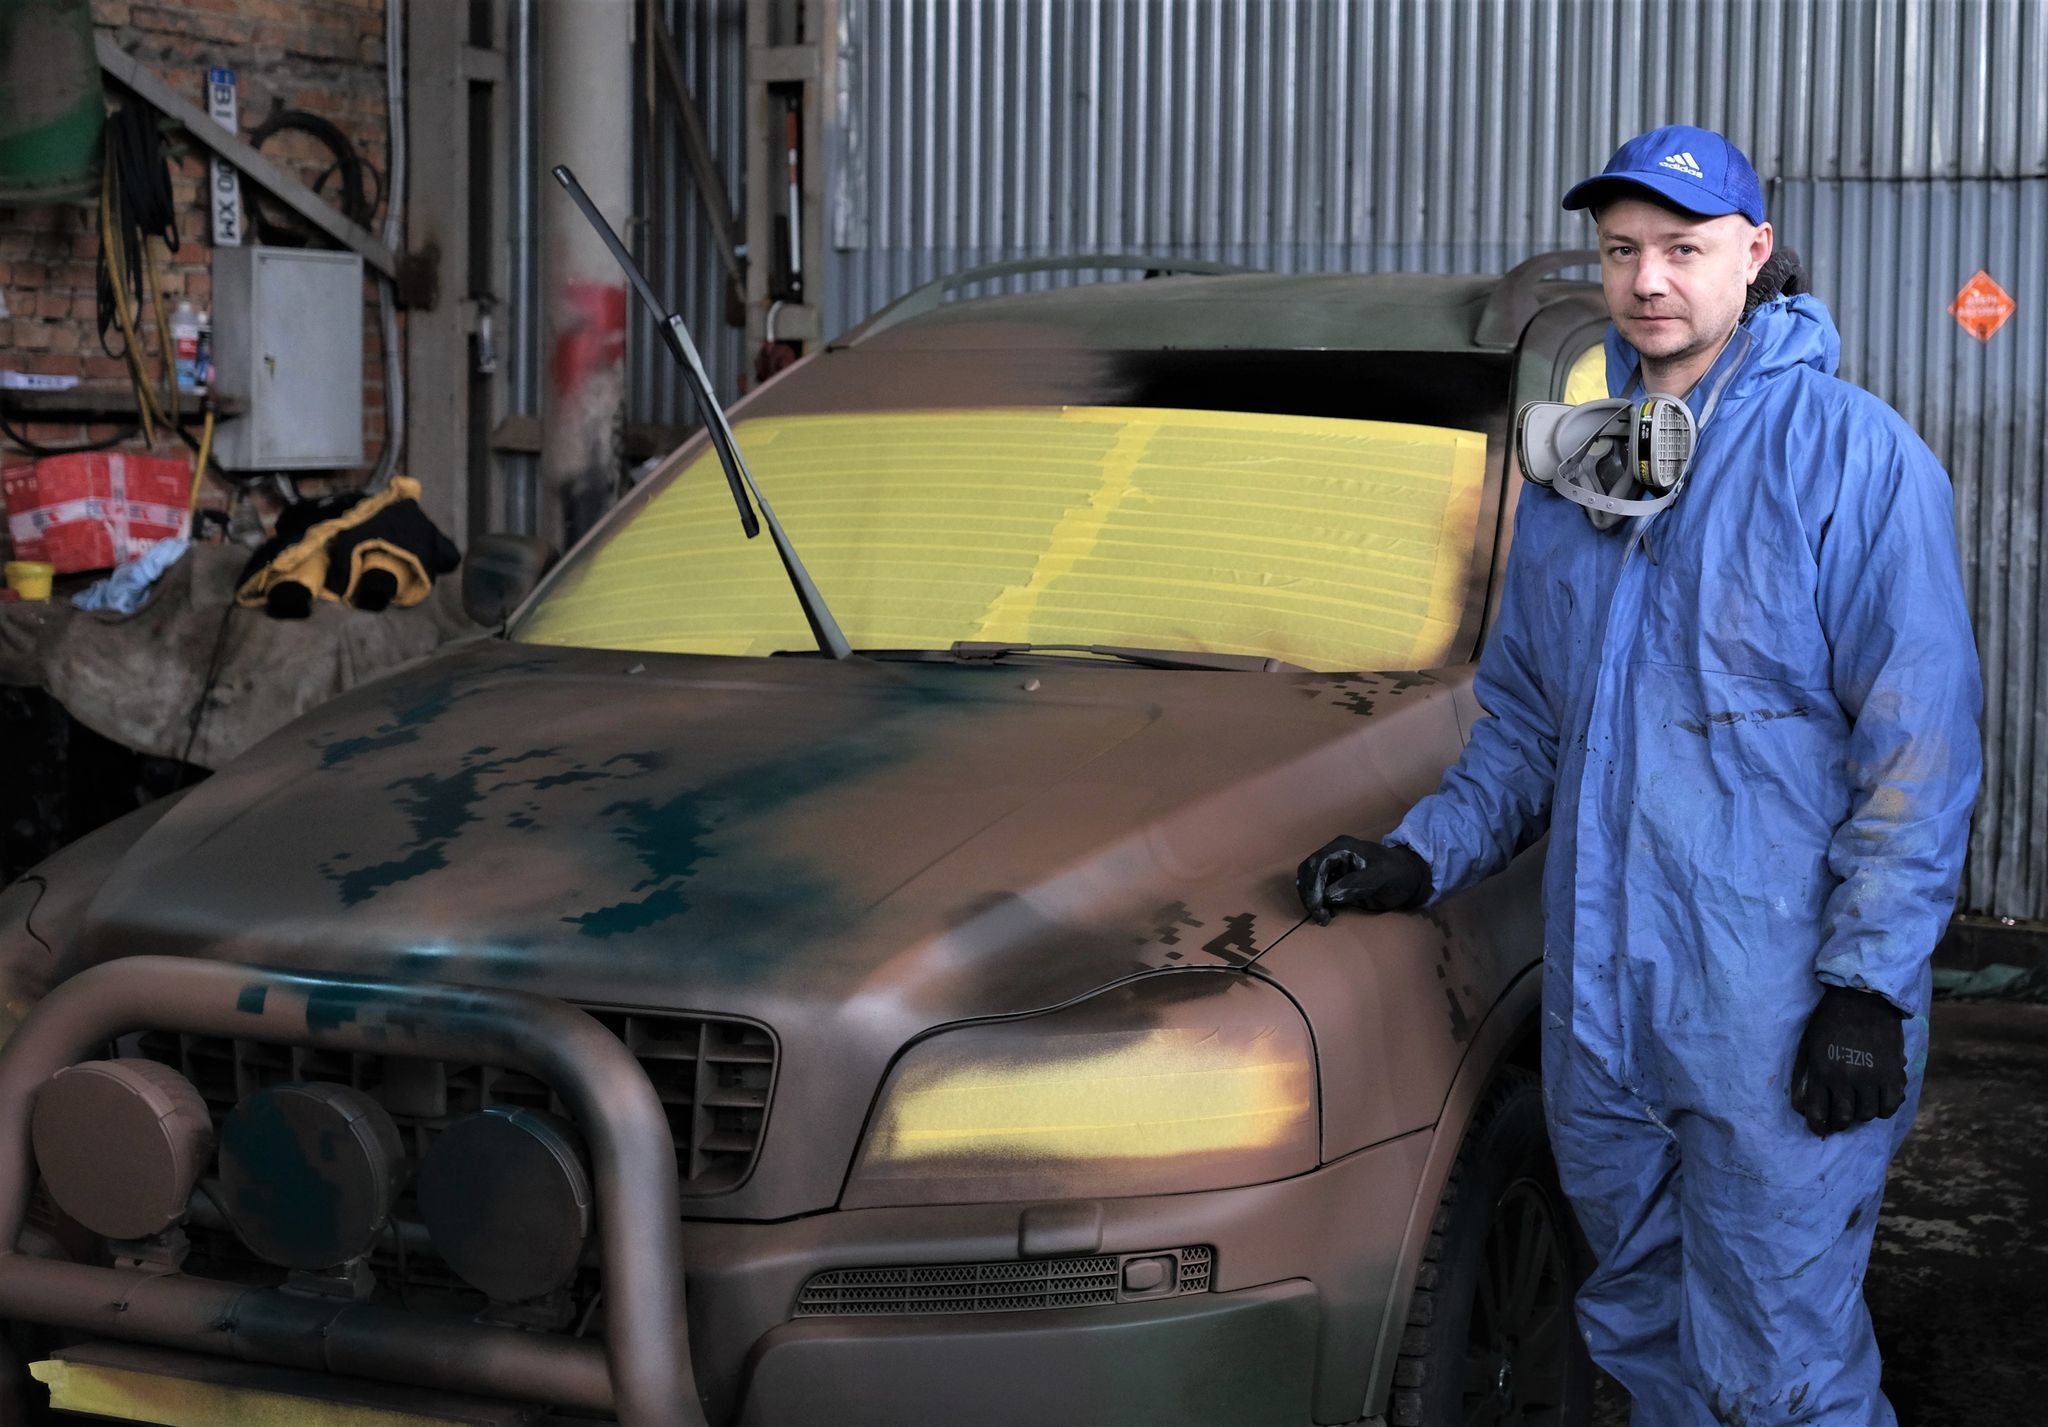 «Вольво» — це вже 40-й автомобіль для ЗСУ, що пройшов через руки Сергія Новосьолова.